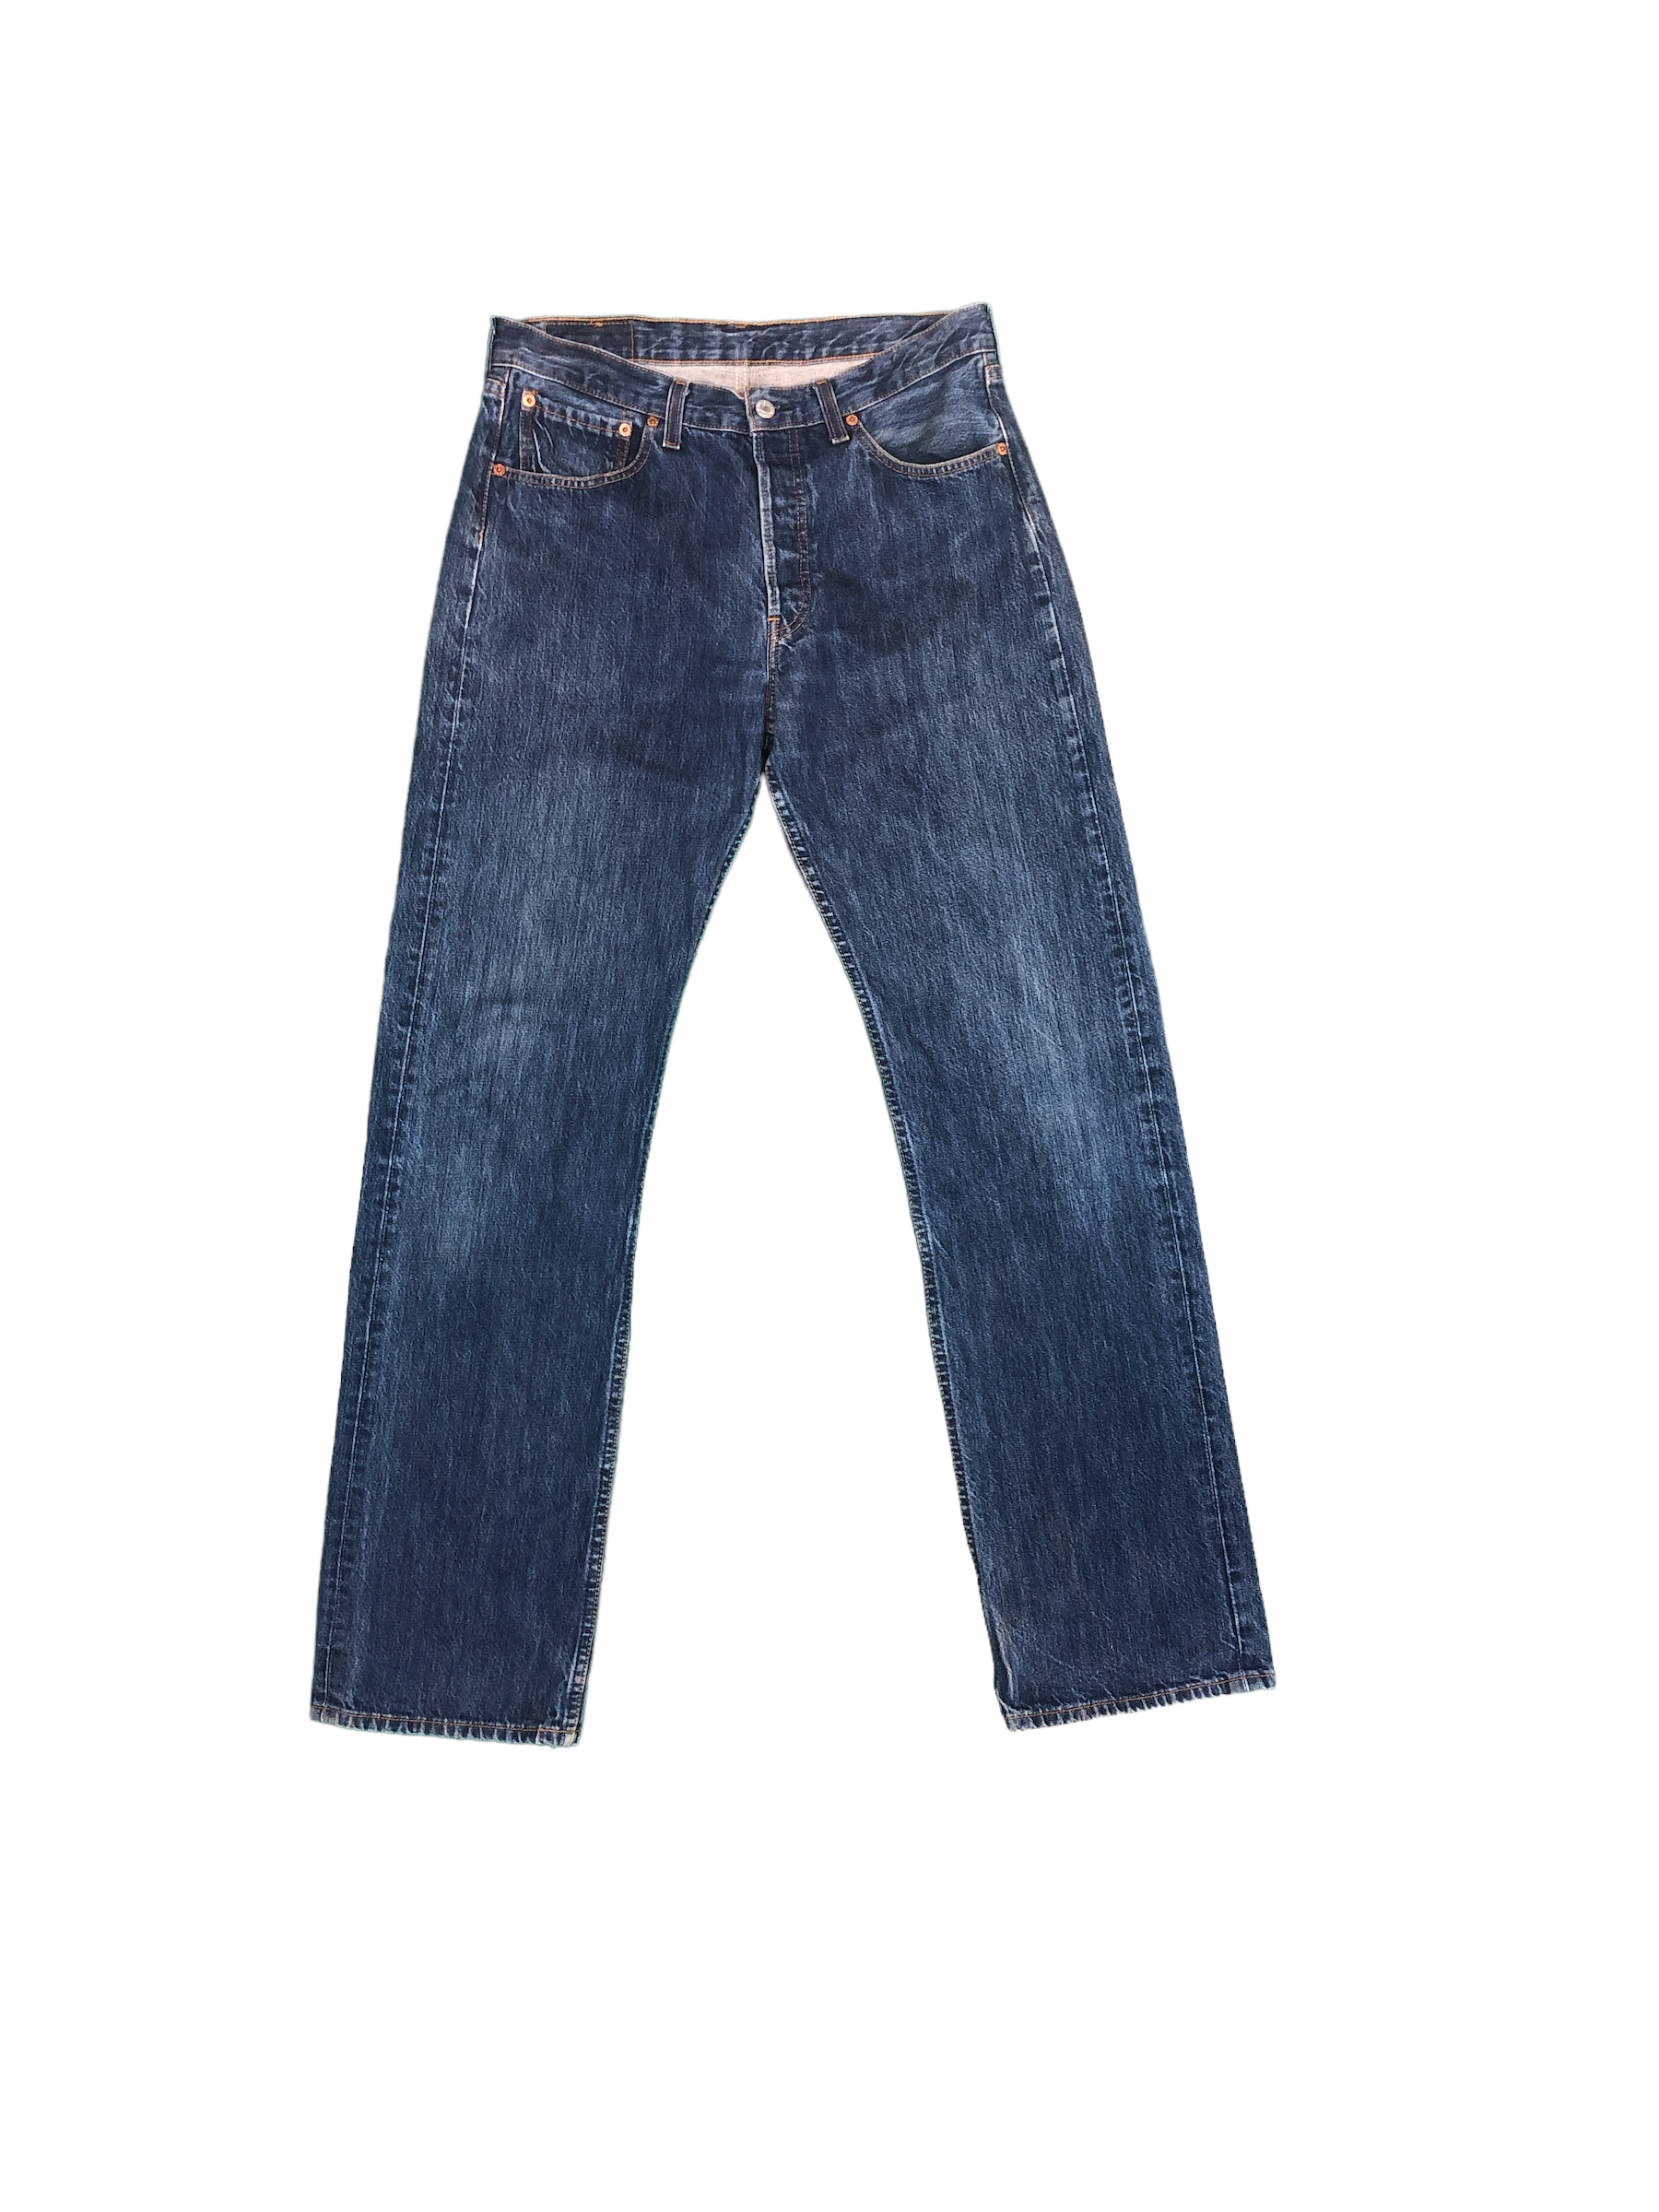 Mens Levis 501 Jeans - Waist 32" Length 34"